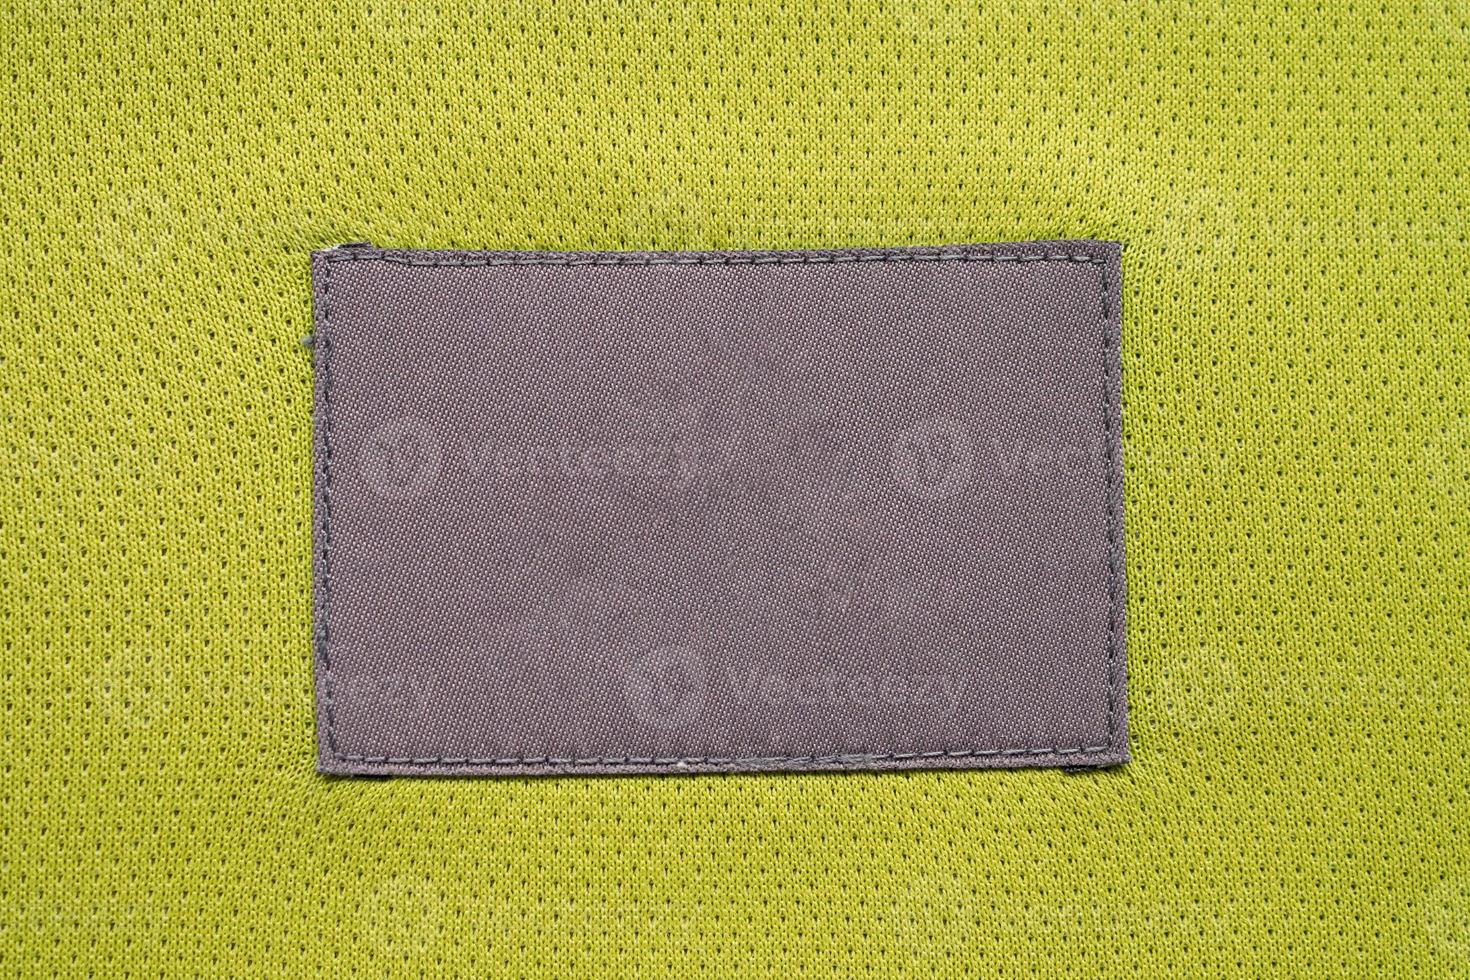 Patch d'étiquette de vêtements d'entretien du linge sur la texture de sport de jersey de tissu de polyester photo